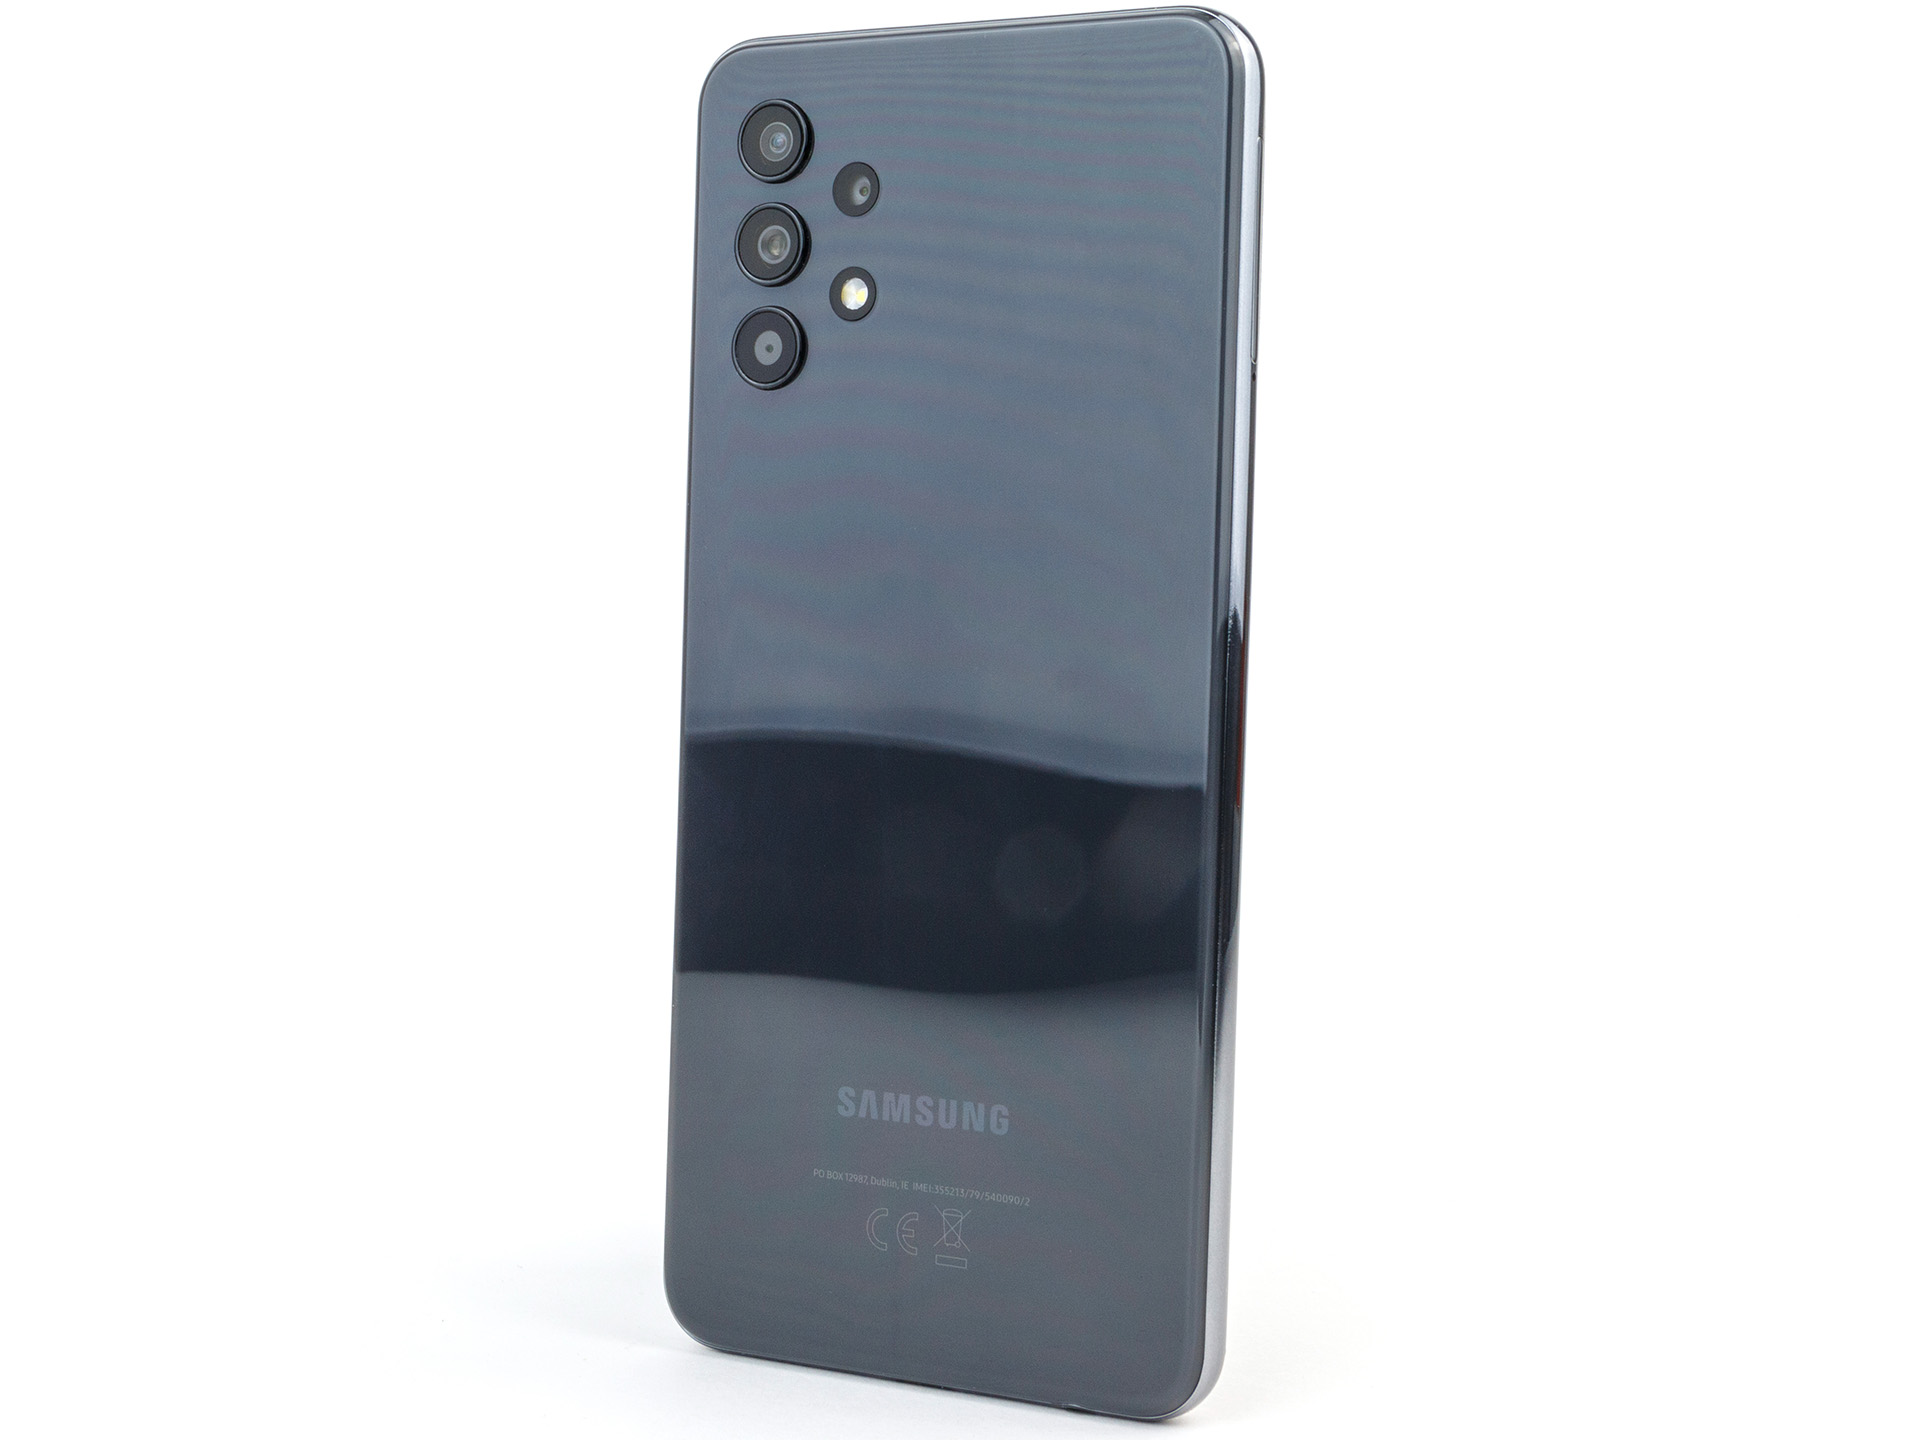 Samsung Galaxy A32 -  External Reviews